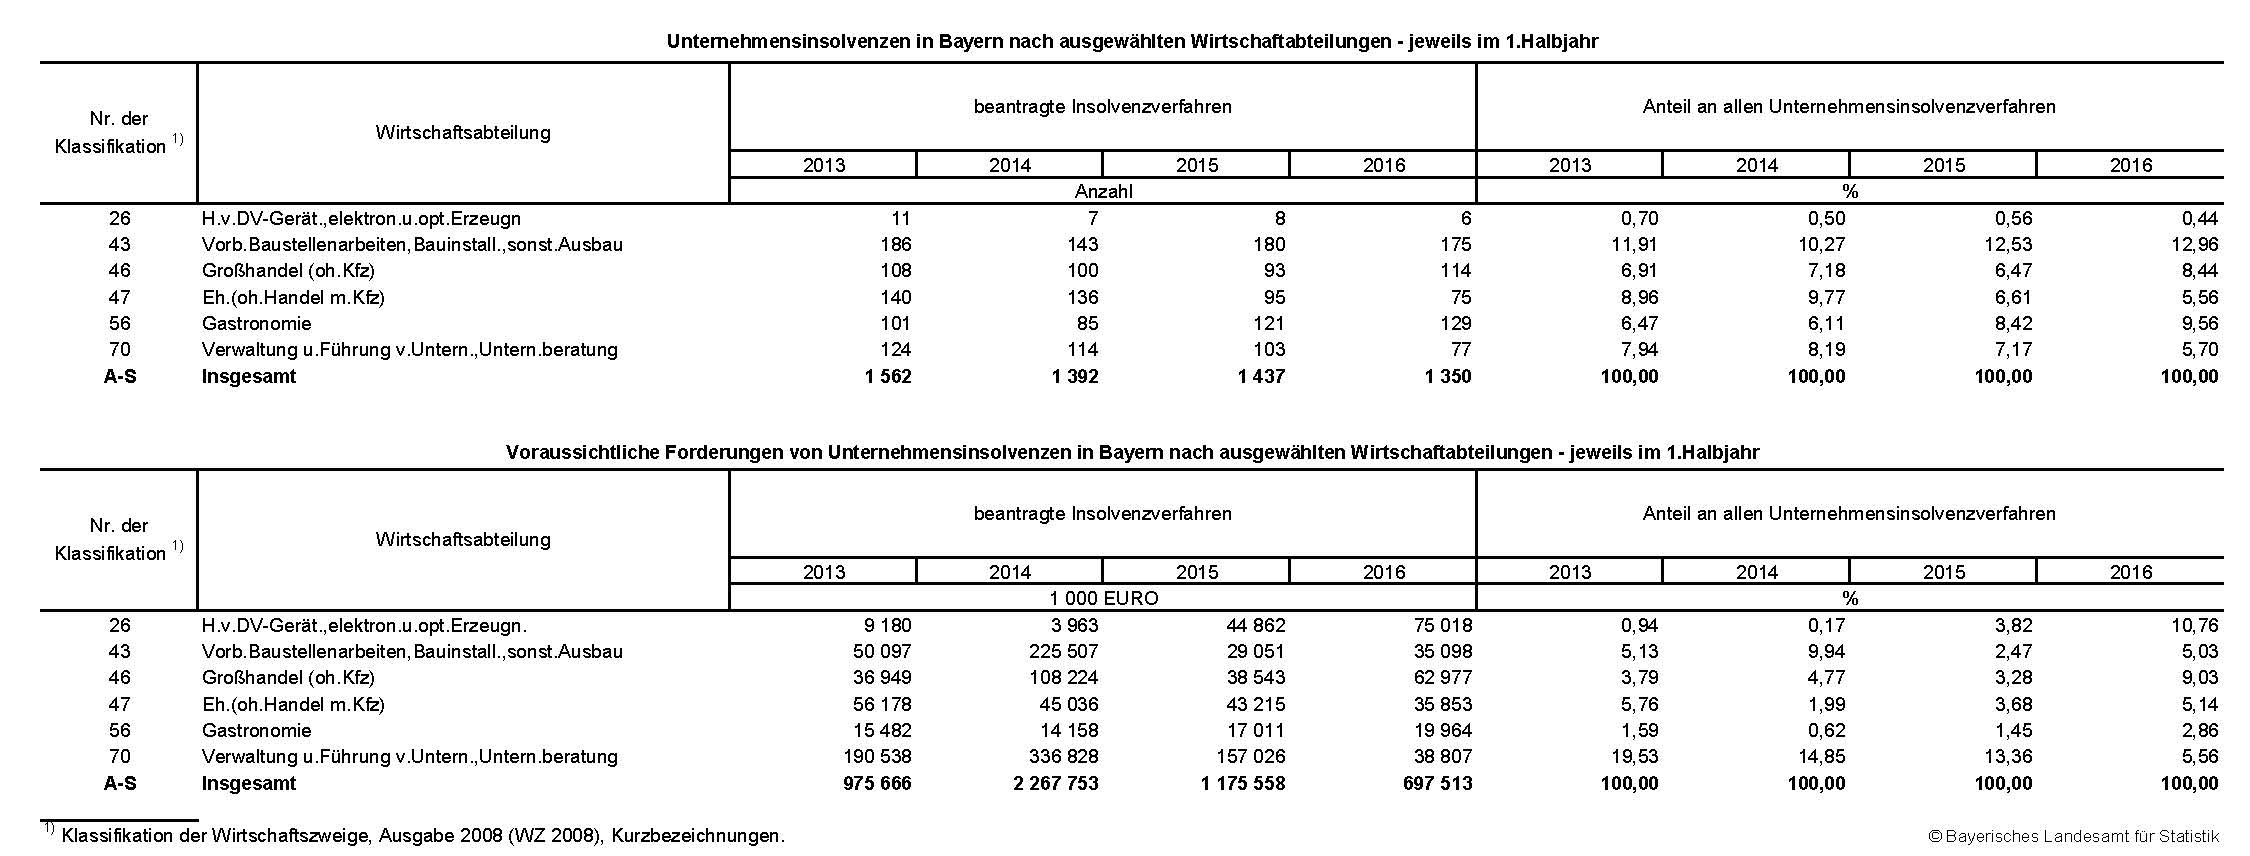 Unternehmensinsolvenzen in Bayern nach ausgewählten Wirtschaftabteilungen - jeweils im 1.Halbjahr